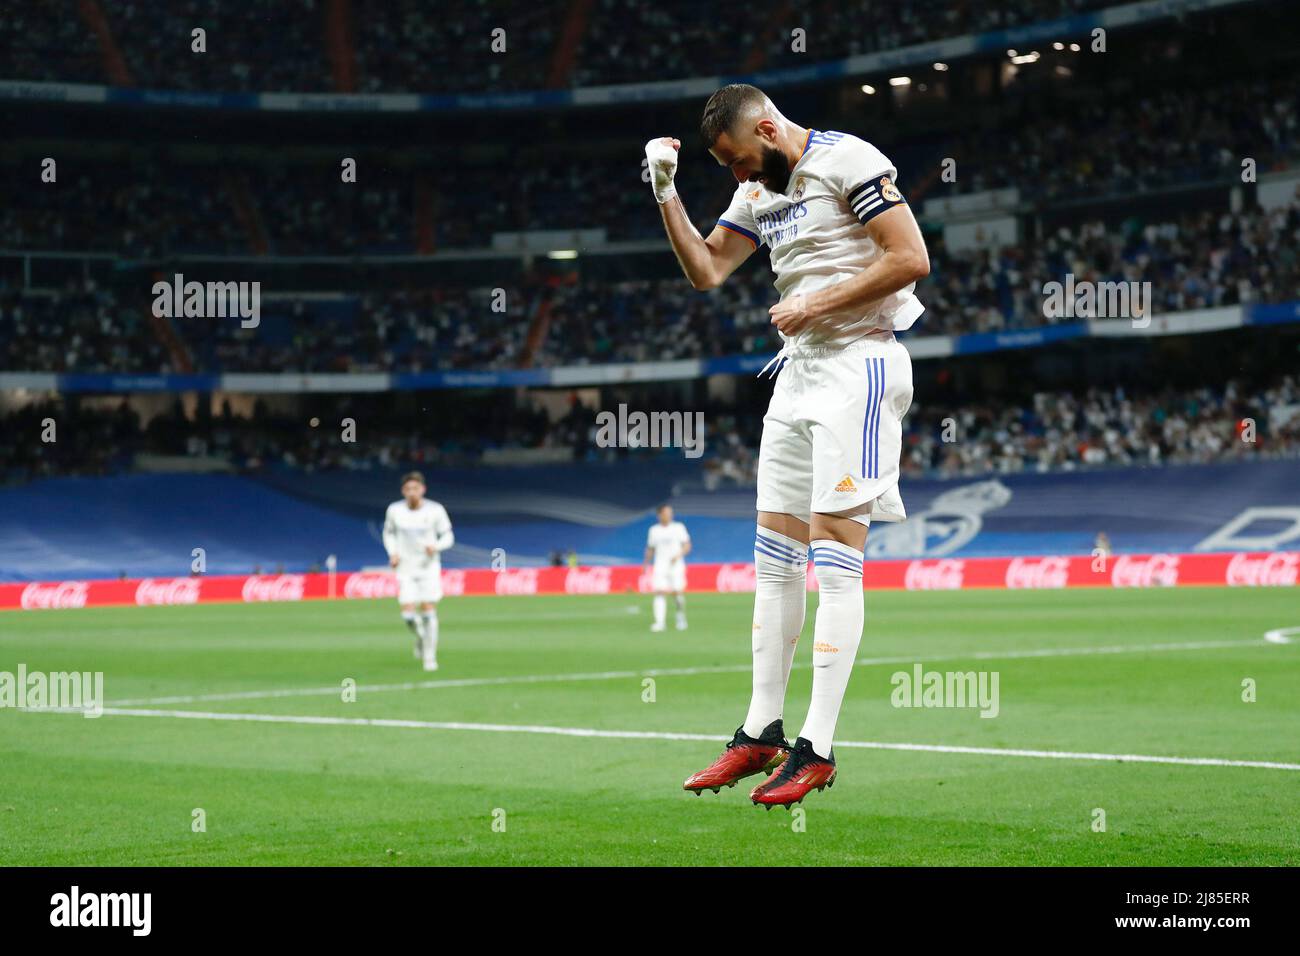 Karim Benzema von Real Madrid feiert ein Tor während des Fußballspiels der spanischen Meisterschaft La Liga zwischen Real Madrid und Levante UD am 12. Mai 2022 im Santiago Bernabeu Stadion in Madrid, Spanien - Foto: Oscar J Barroso/DPPI/LiveMedia Stockfoto